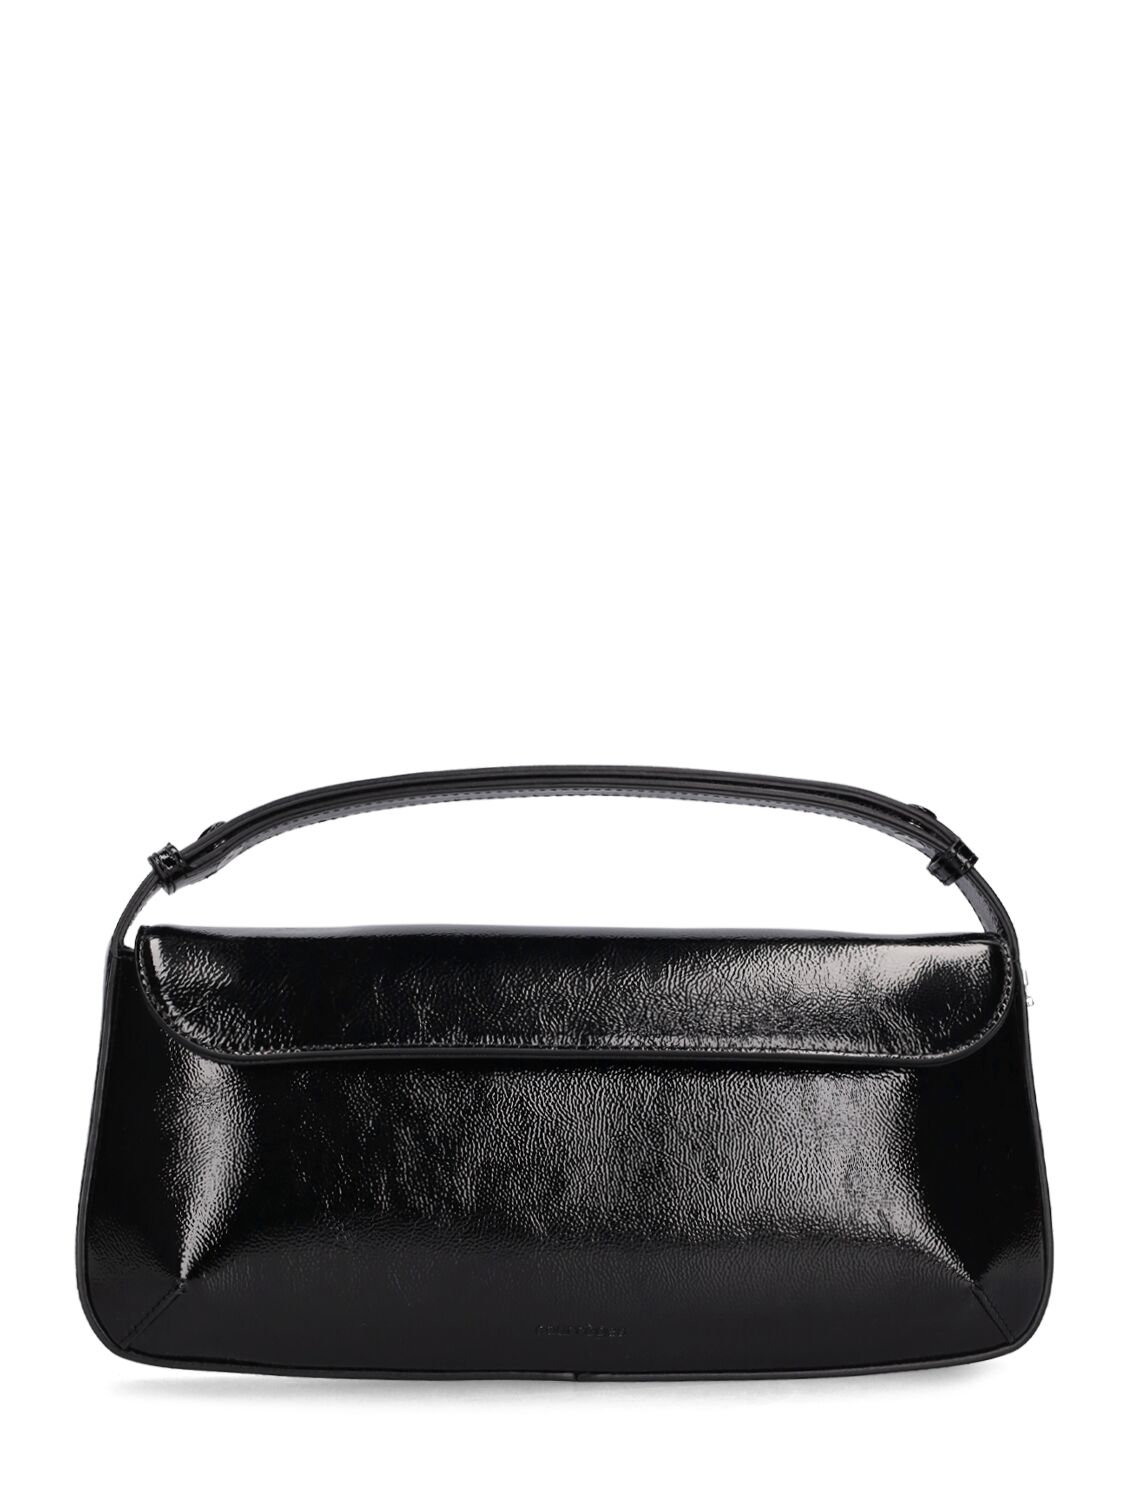 Courrèges Sleek Naplack Leather Bag In Black